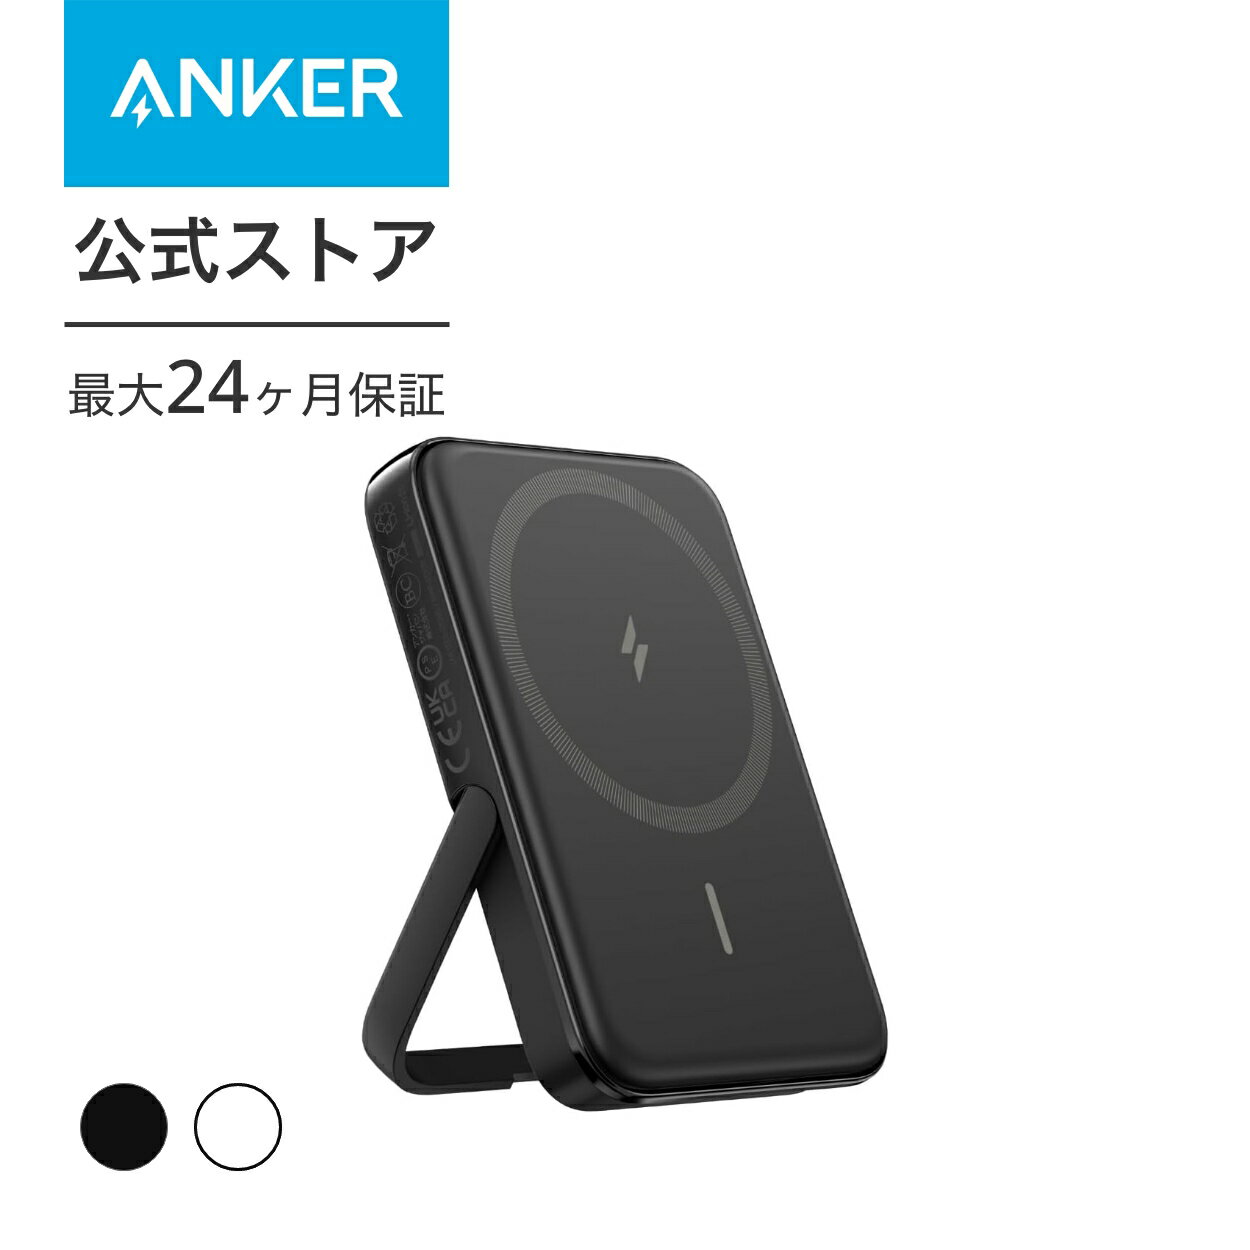 モバイルバッテリー（5000円程度） Anker MagGo Power Bank (5000mAh, 7.5W, Stand) マグネット式ワイヤレス充電対応 5000mAh コンパクト モバイルバッテリー 折りたたみ式スタンド iPhone 14 / 13 / 12 シリーズ専用